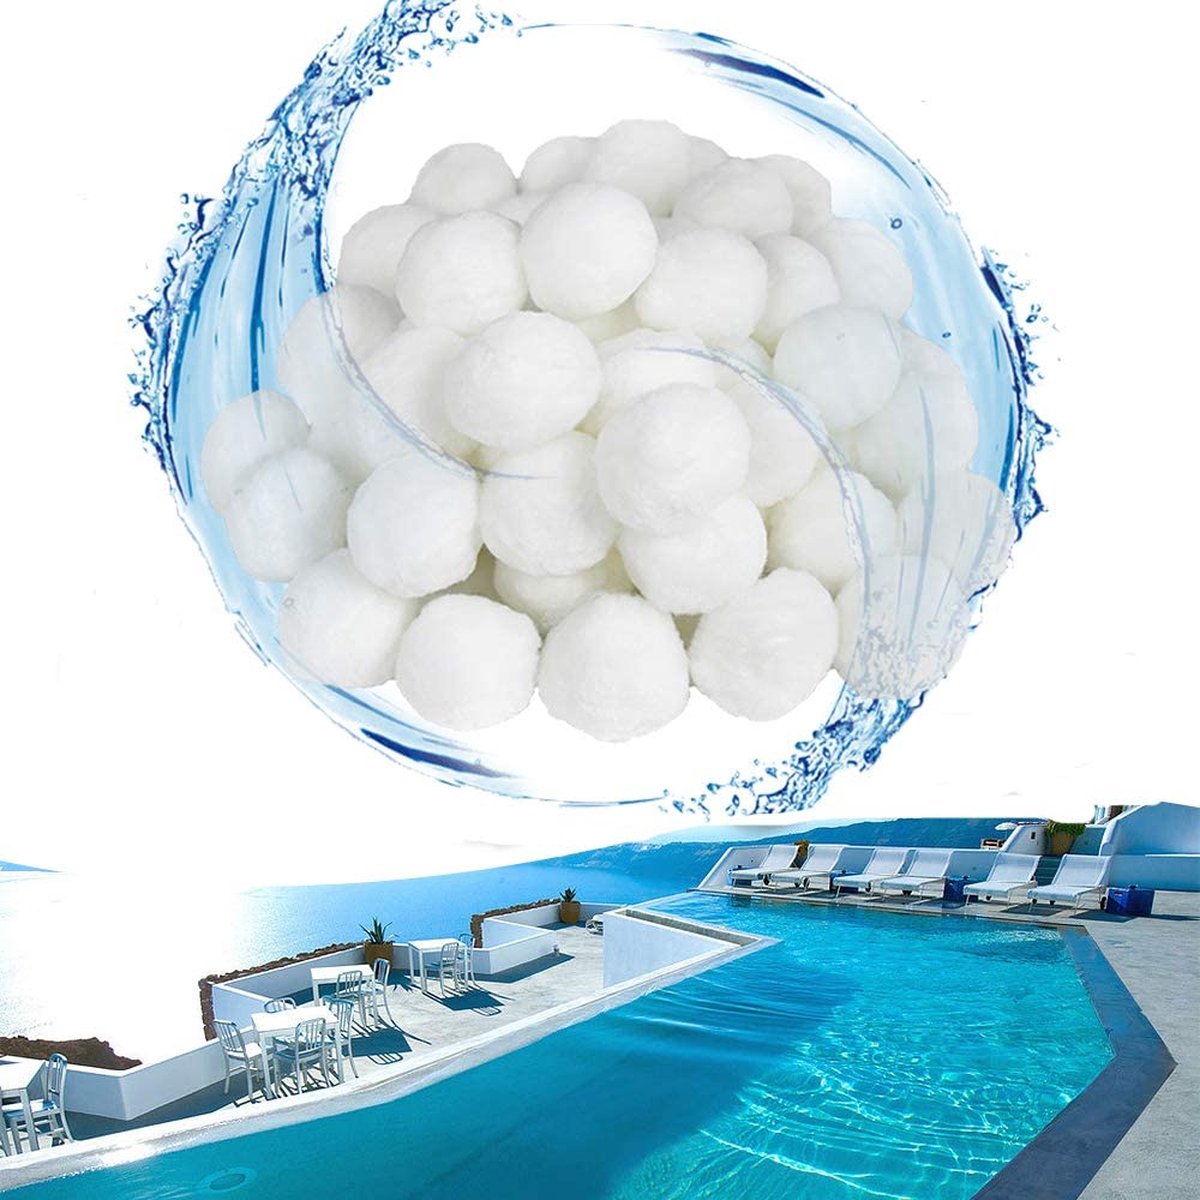 Pool Filter Balls 700g filtermateriaal polysphere filterballen zwembadfilter vervangen 25 kg filterzand voor zwembad zandfilter (700g)